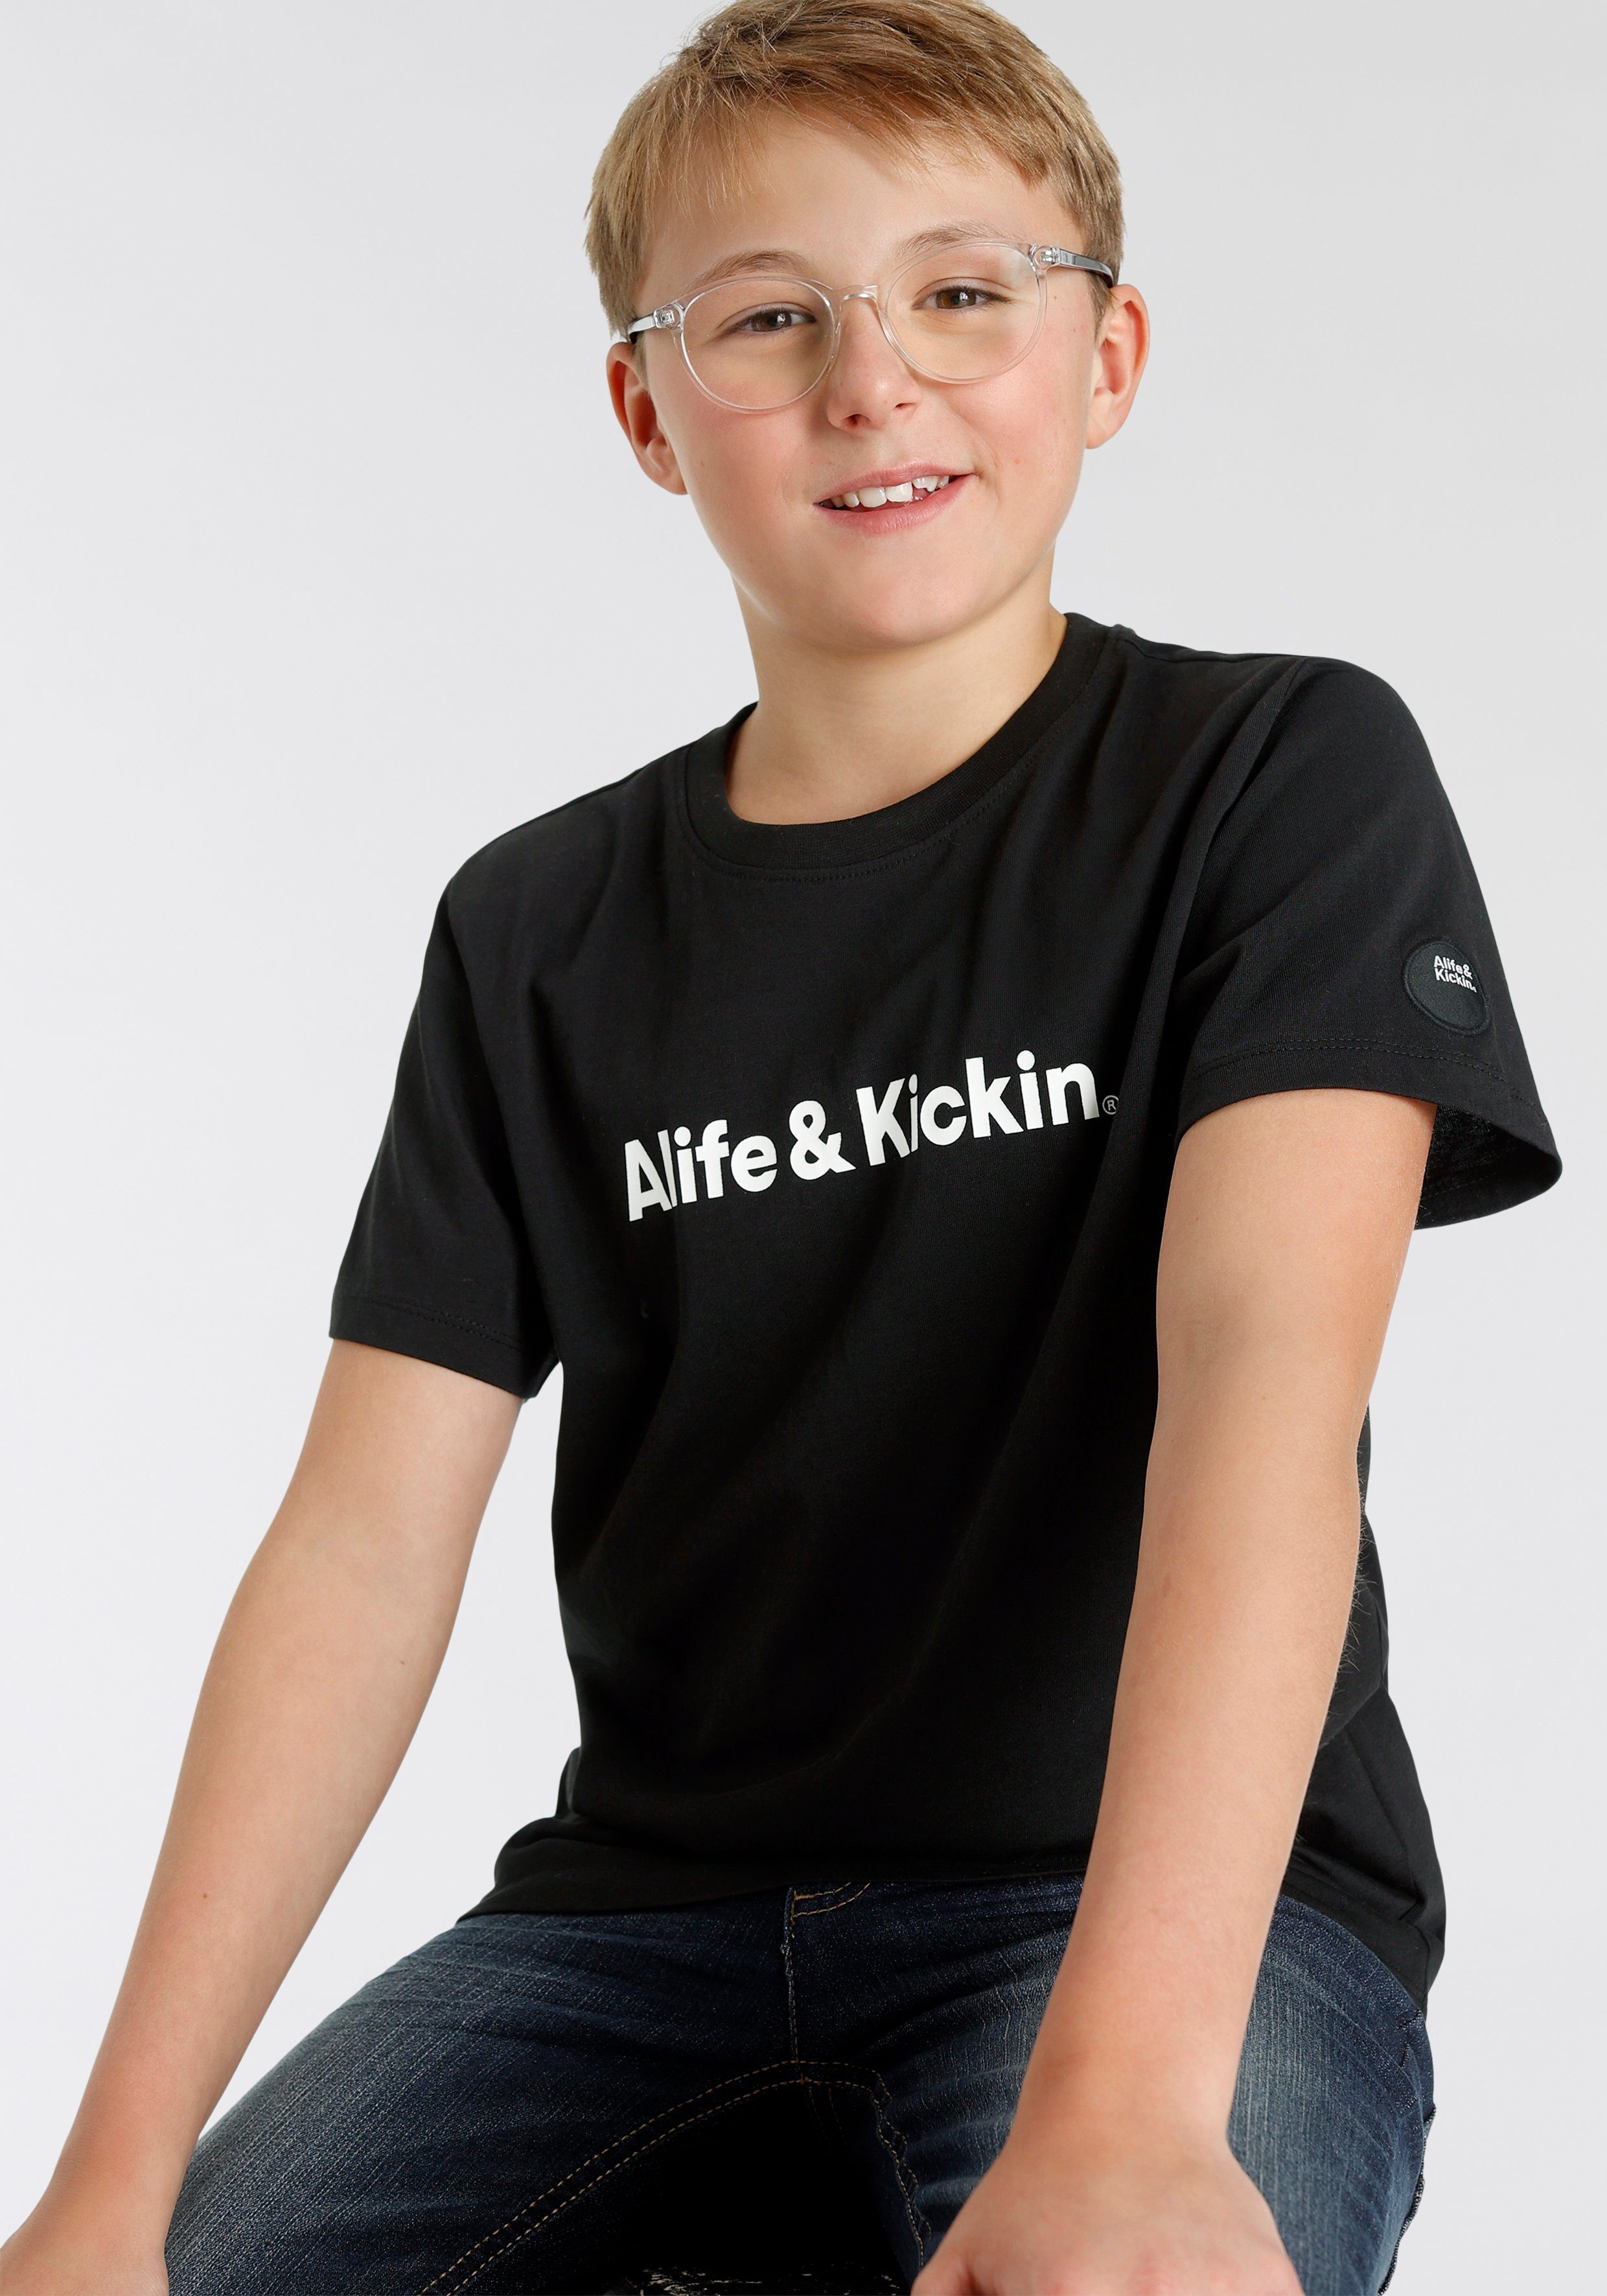 für Kids. MARKE! & Kickin NEUE T-Shirt Alife&Kickin Logo-Print, Alife